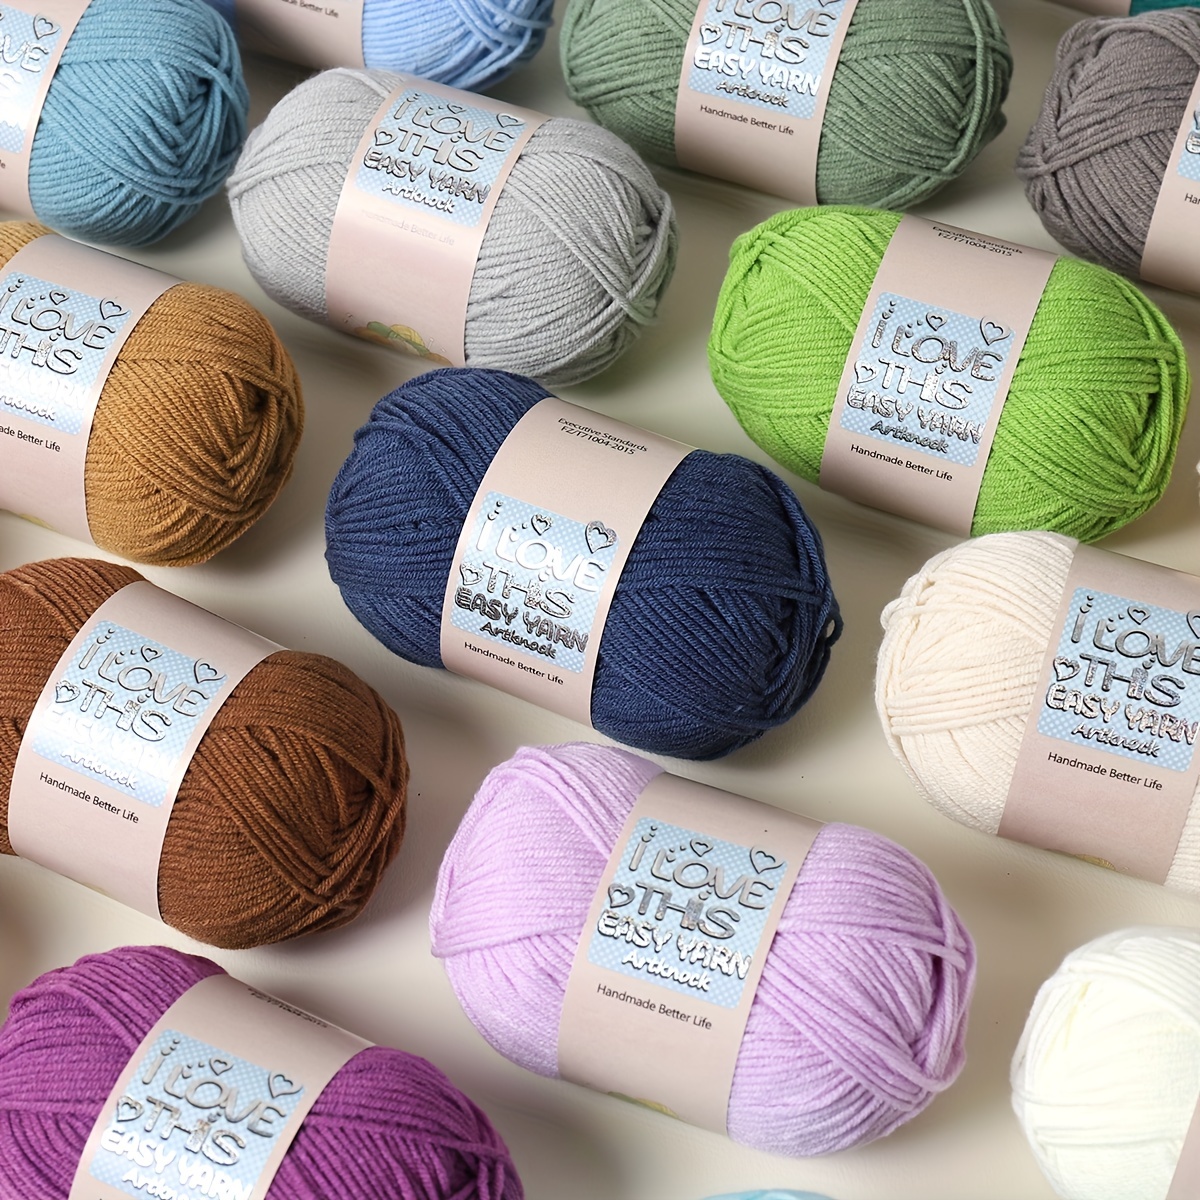 Yarn for Crocheting,Soft Yarn 1Pcs Yarn for Crocheting Blankets Acrylic Crochet Yarn for Sweater,Hat,Socks,Baby Blankets